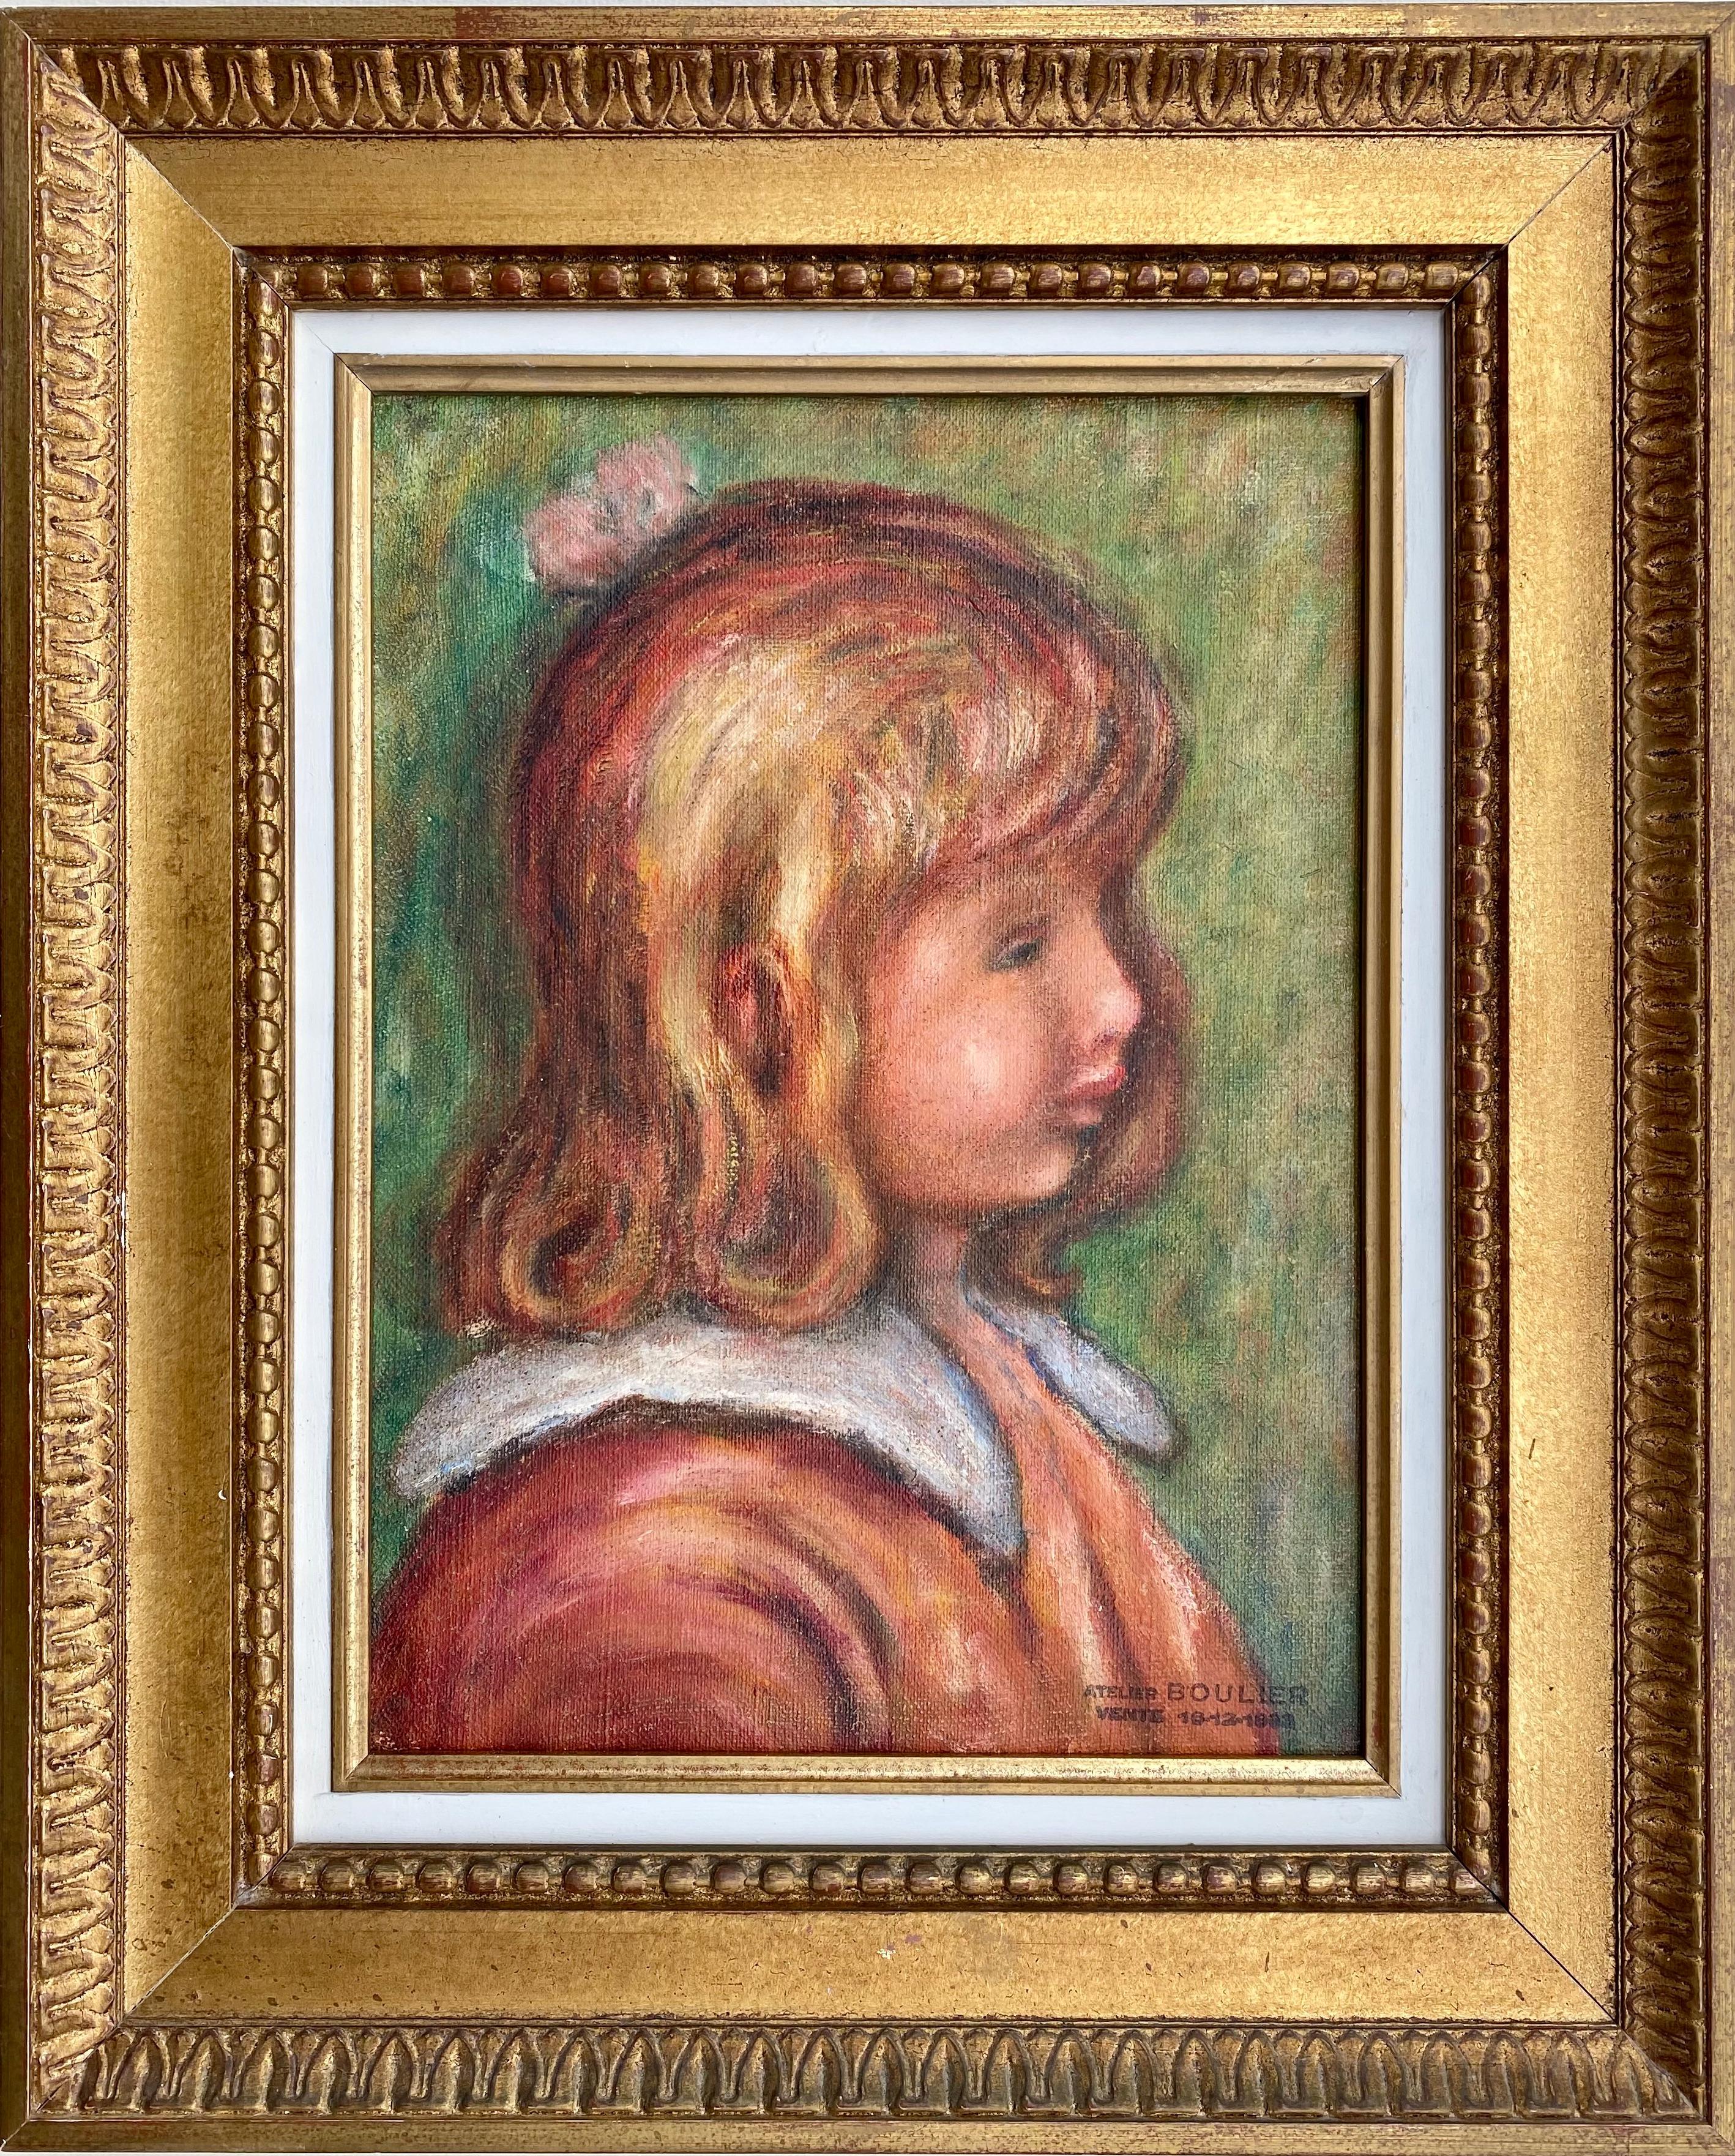 Lucien Boulier Portrait Painting – Auguste Renoirs letzter Schüler: Porträt des Sohnes von Renoir"